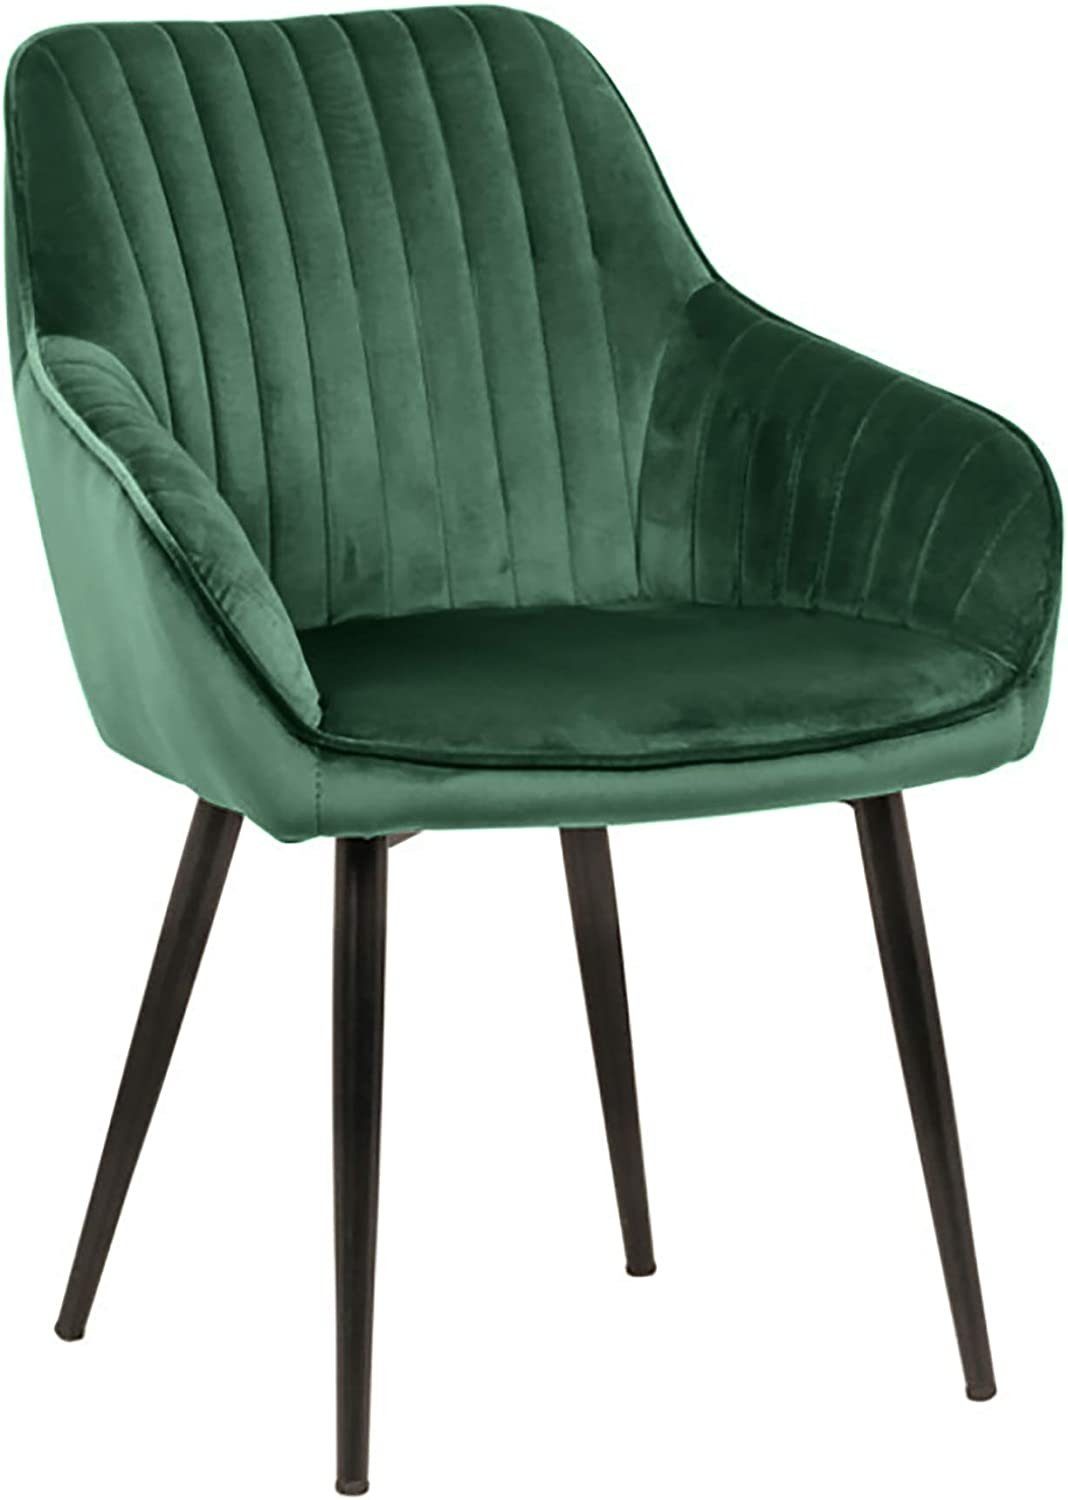 LebensWohnArt Stuhl Eleganter Stuhl MILAN Samt grün Ziersteppung Armlehnen